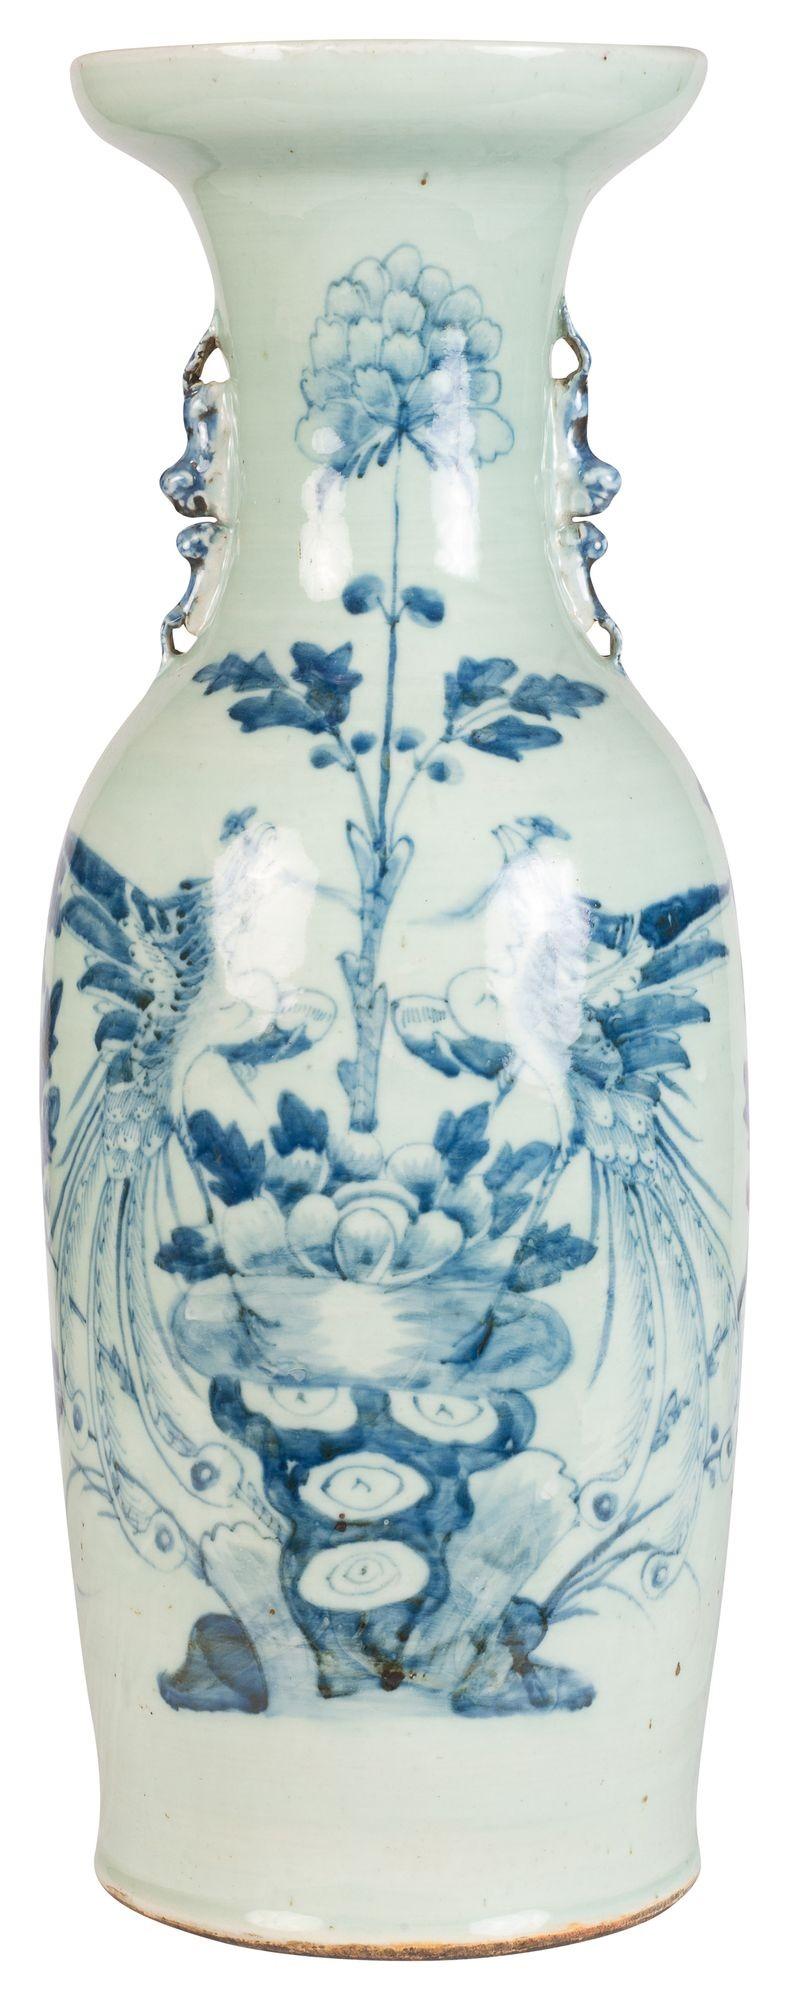 Vase / lampe décoratif de la fin du 19e siècle, exporté de Chine en bleu et blanc. Elle est ornée d'une magnifique décoration de fleurs et de feuilles et de poignées en forme de chien mythique Foo sur les côtés.
Lot 74


